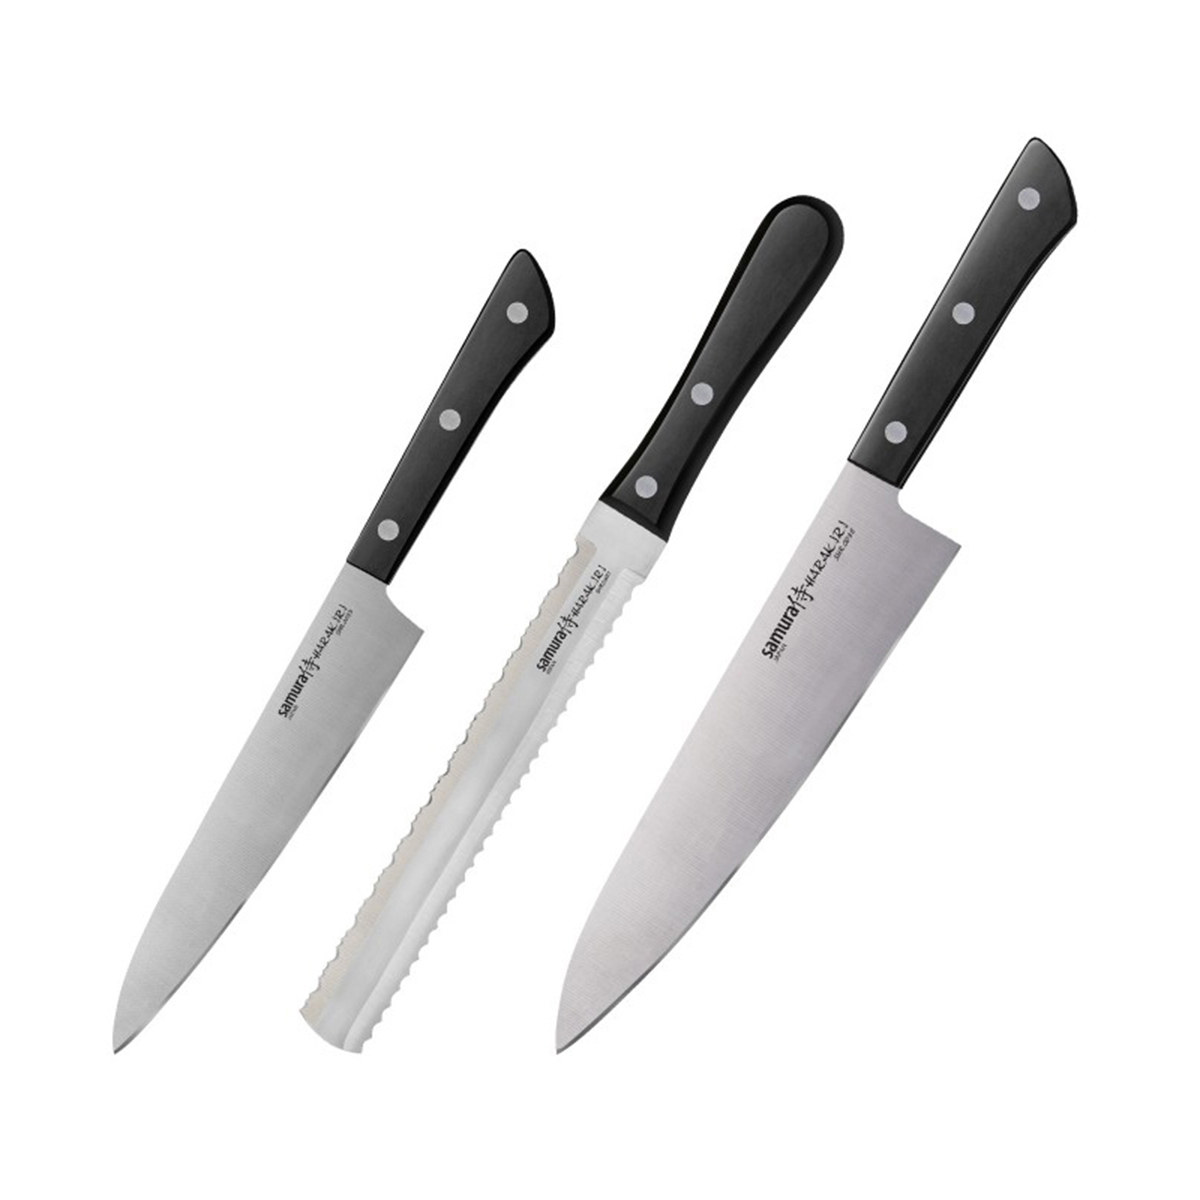 Set of 3 pcs Knives with Black Handle, HARAKIRI - SAMURA®️